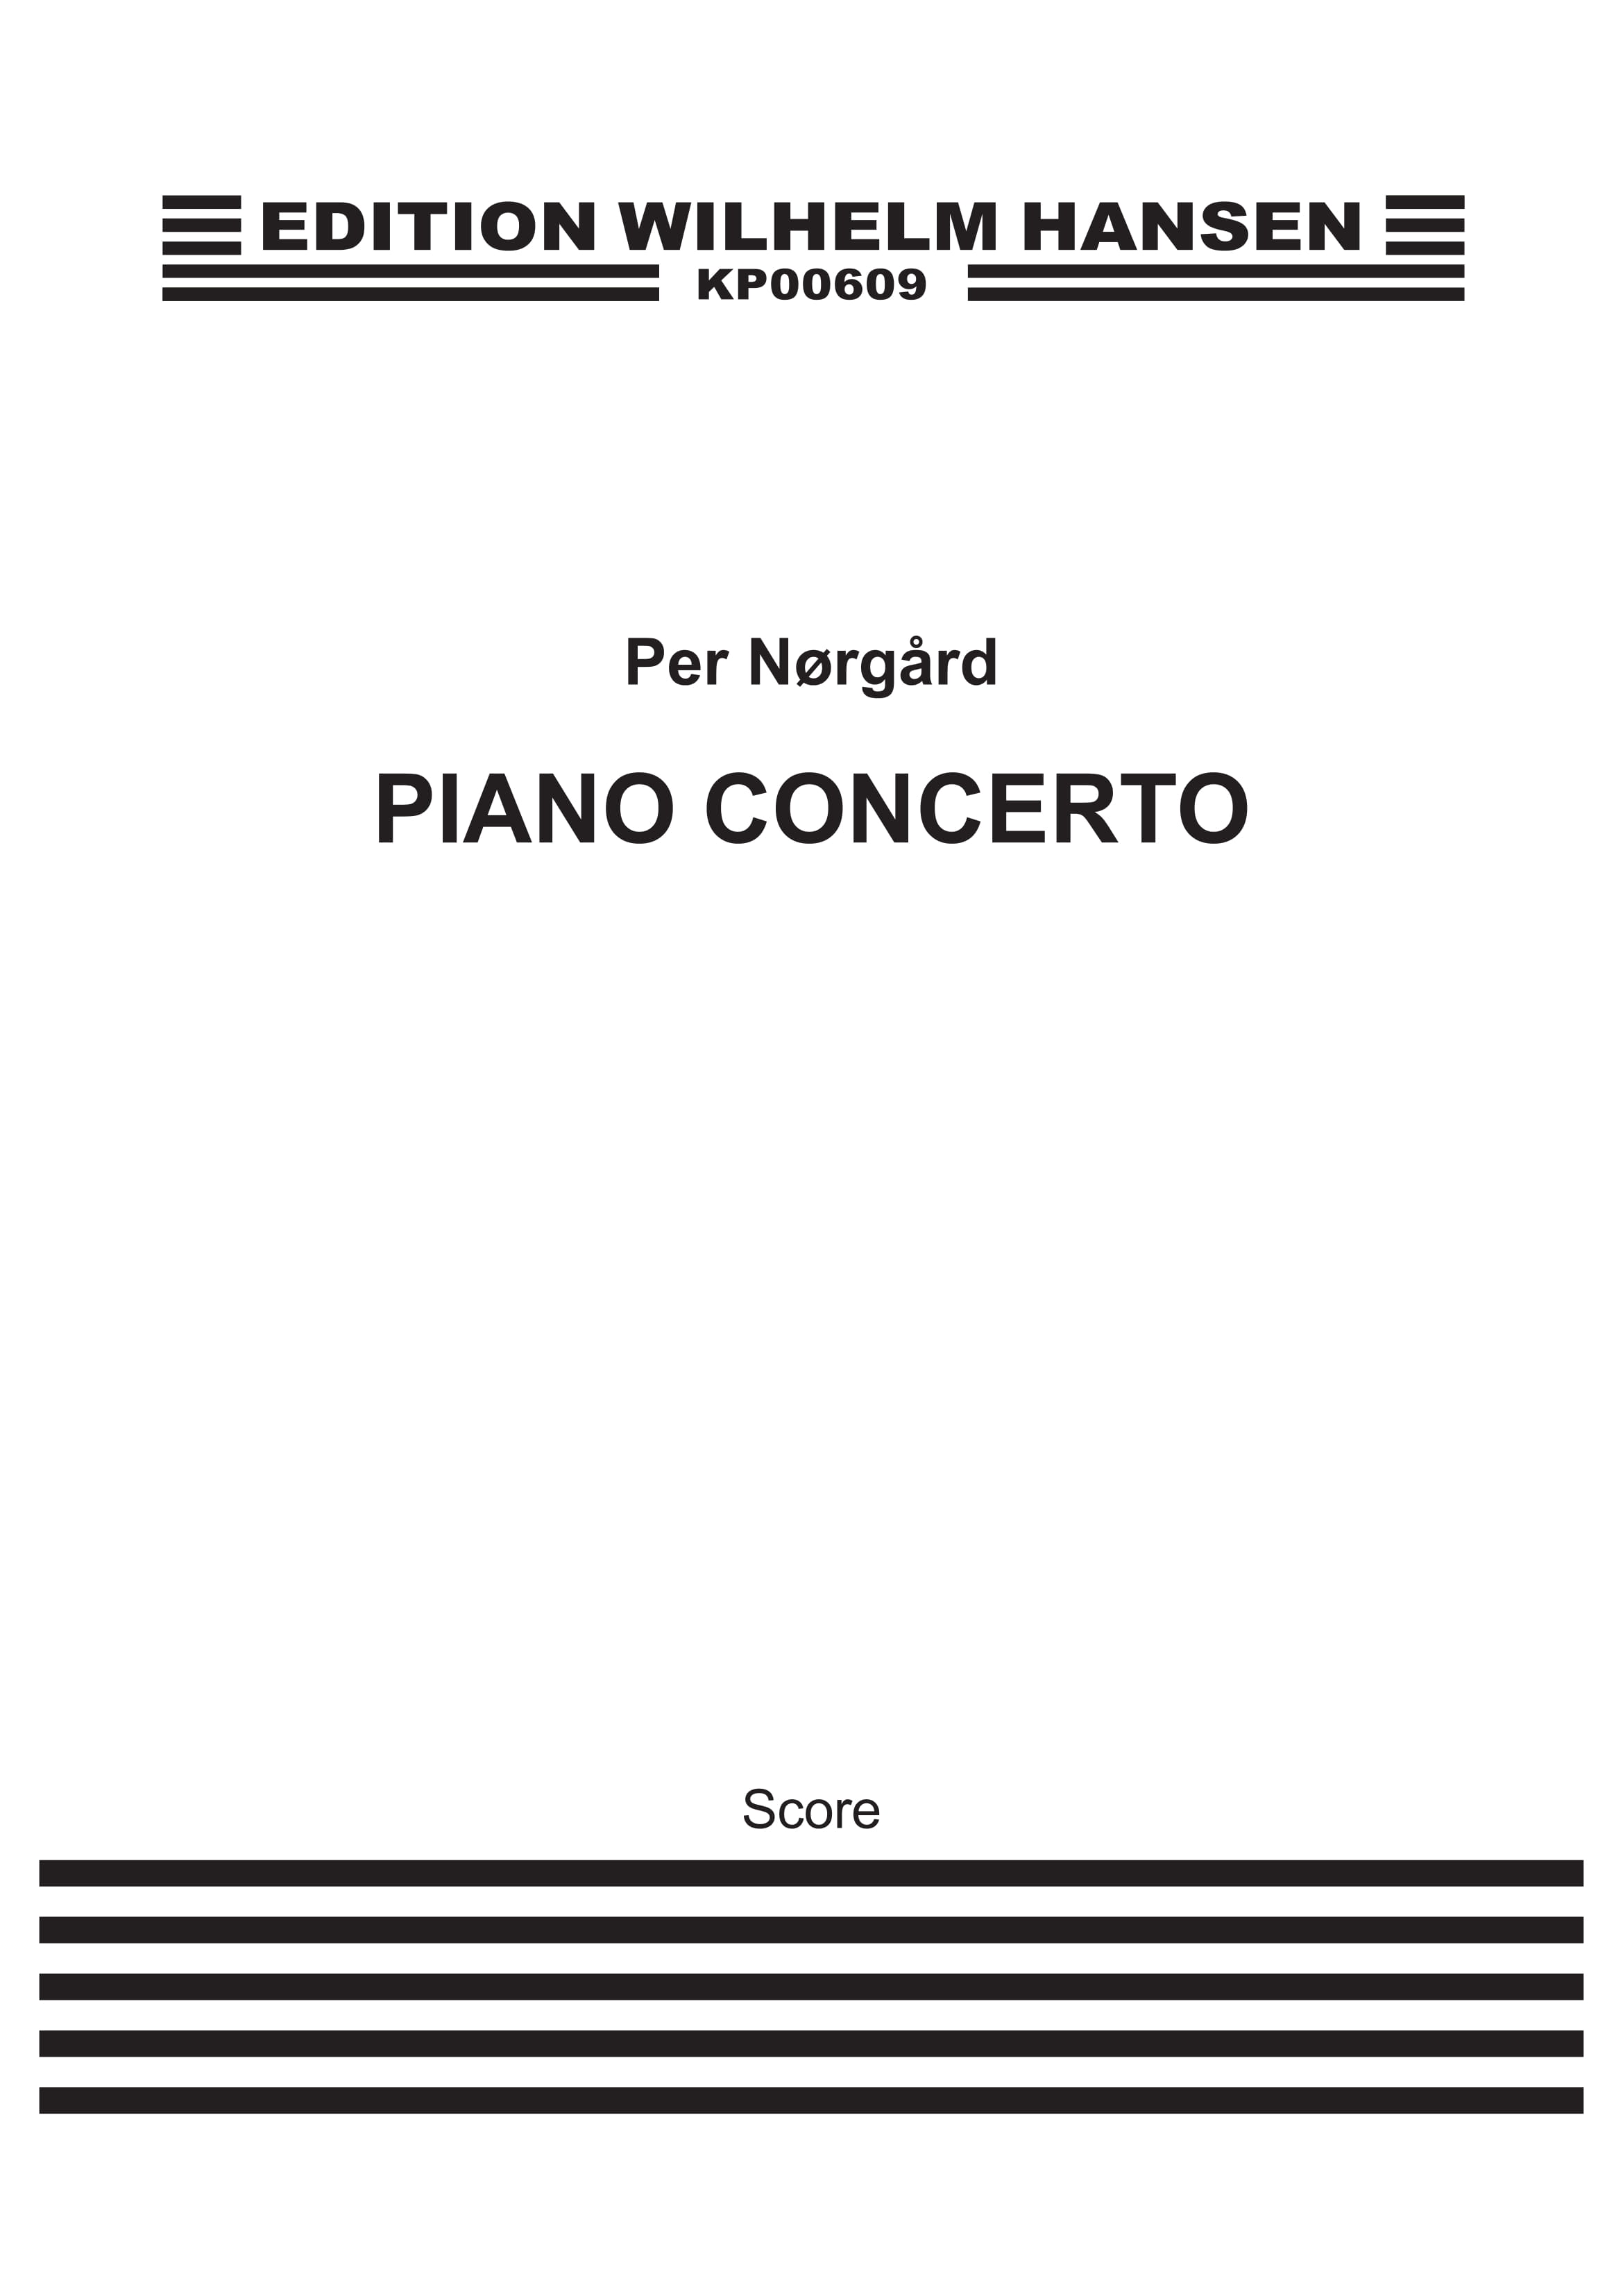 Per Nrgrd: Piano Concerto - Concerto In Due Tempi